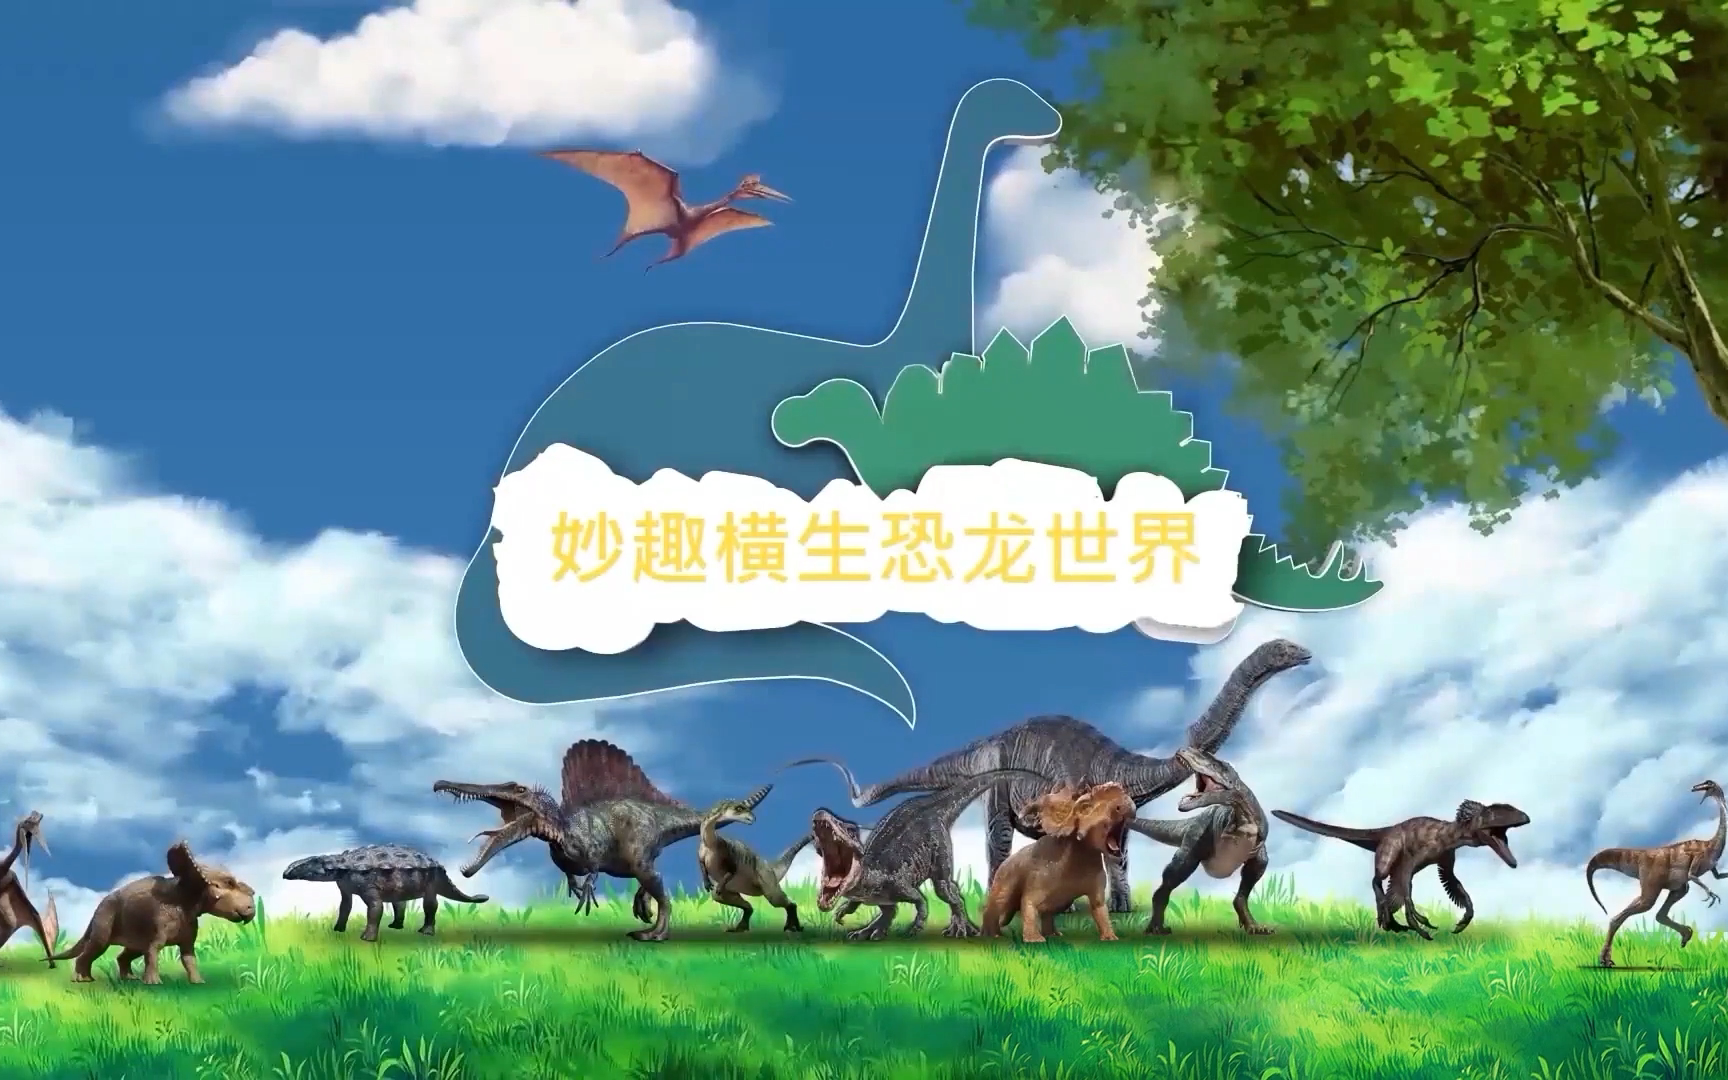 妙趣横生恐龙世界 32